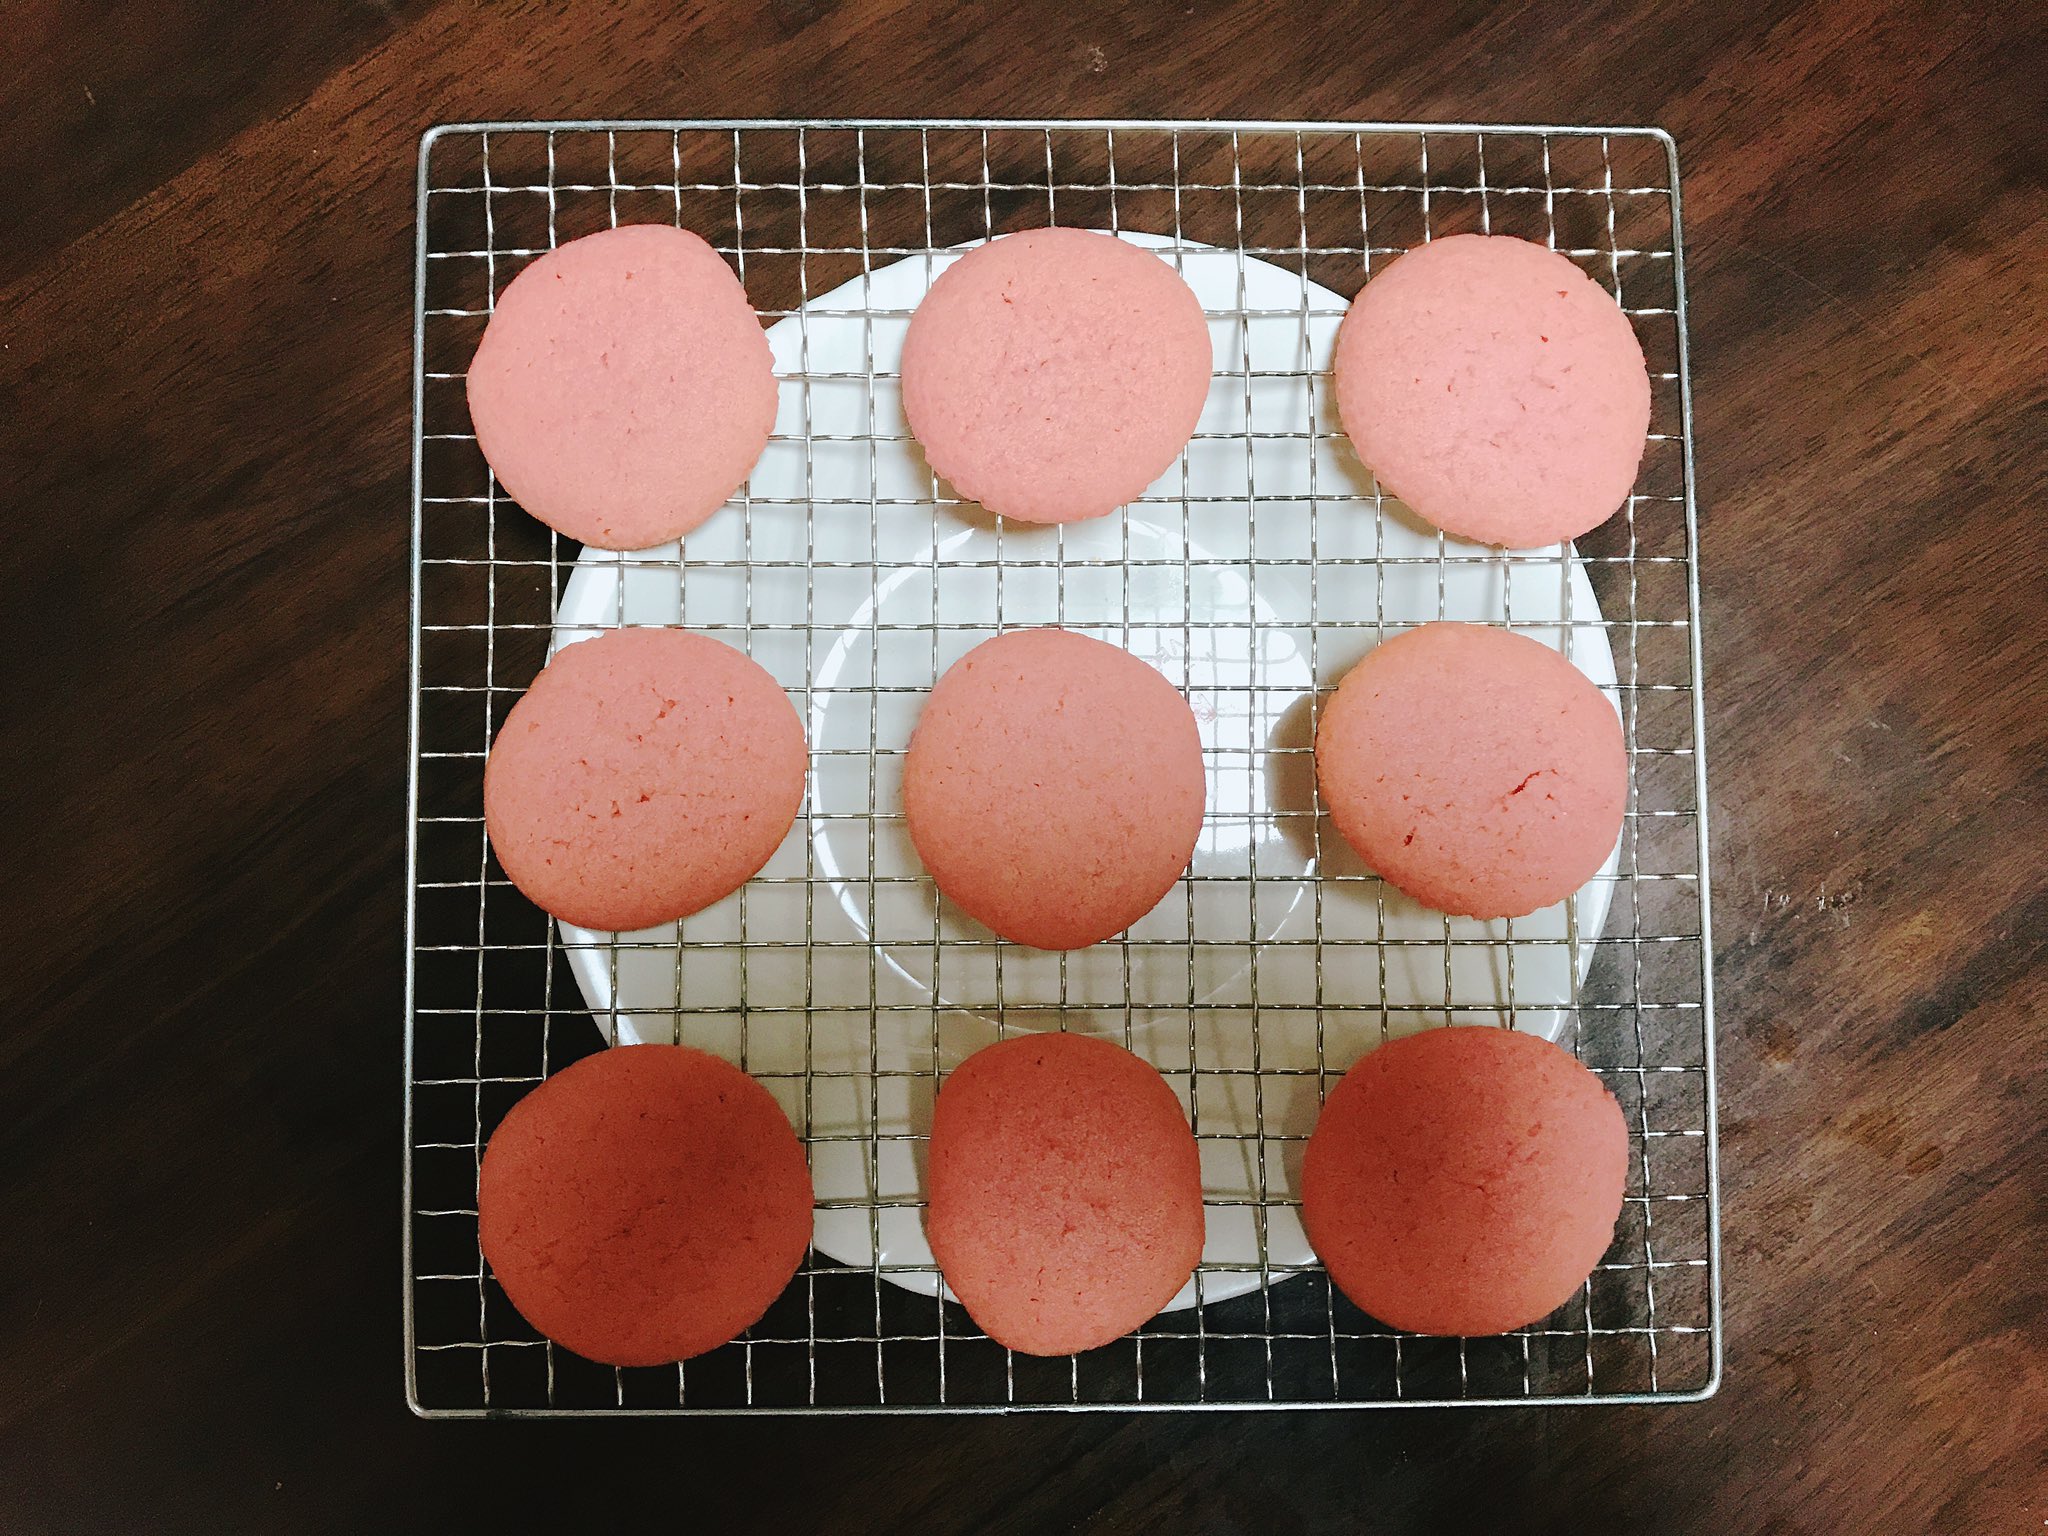 Misaki お菓子作り バタークリーム消費のために ソフトクッキーを作って 挟んでみました 食紅 のリベンジも兼ねてクッキーは ピンク色にしてみました 綺麗な色が出たし 味も美味しかった T Co g4naymyh Twitter